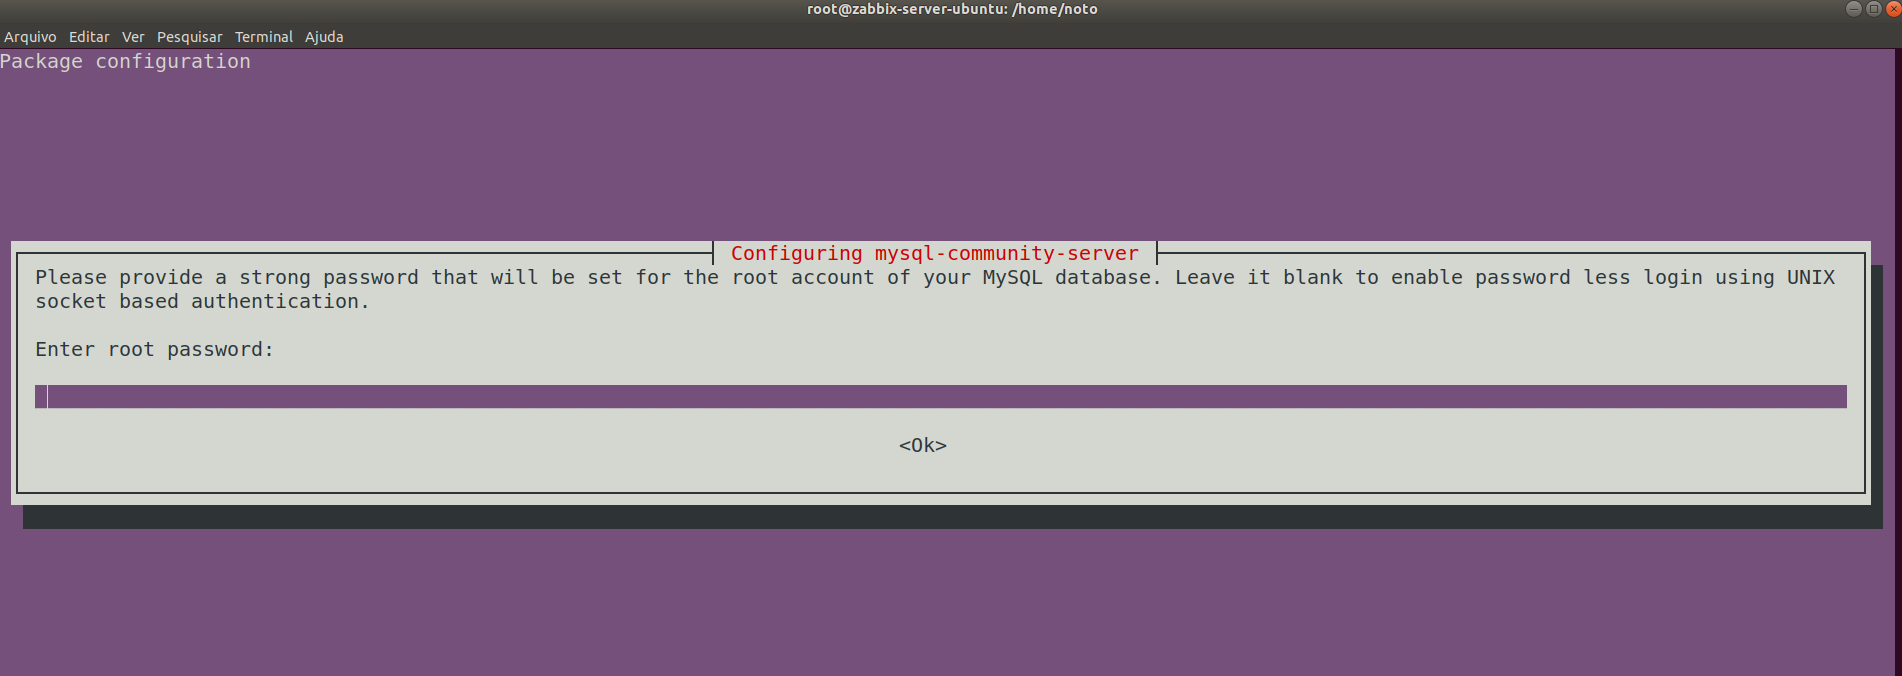 Tutorial Zabbix Ubuntu Nginx